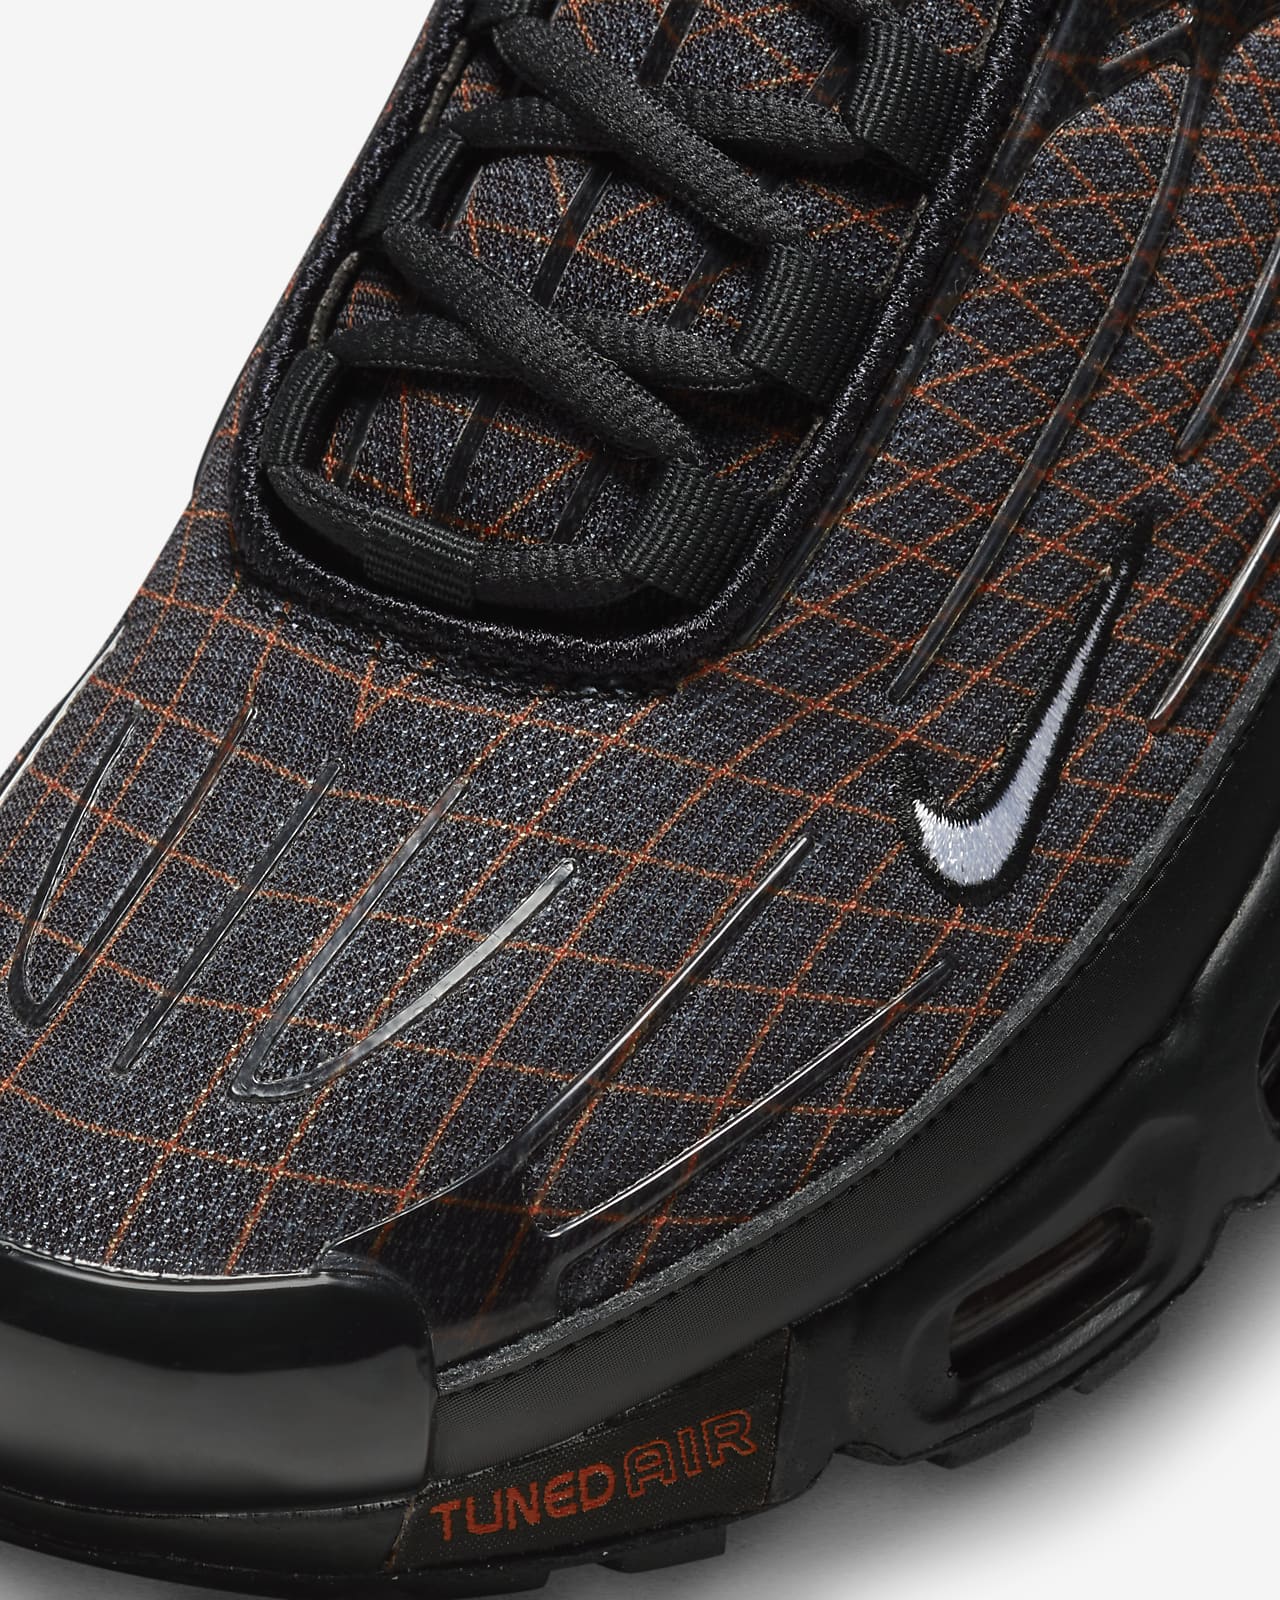 Despertar Están familiarizados todos los días Nike Air Max Plus 3 Zapatillas - Hombre. Nike ES